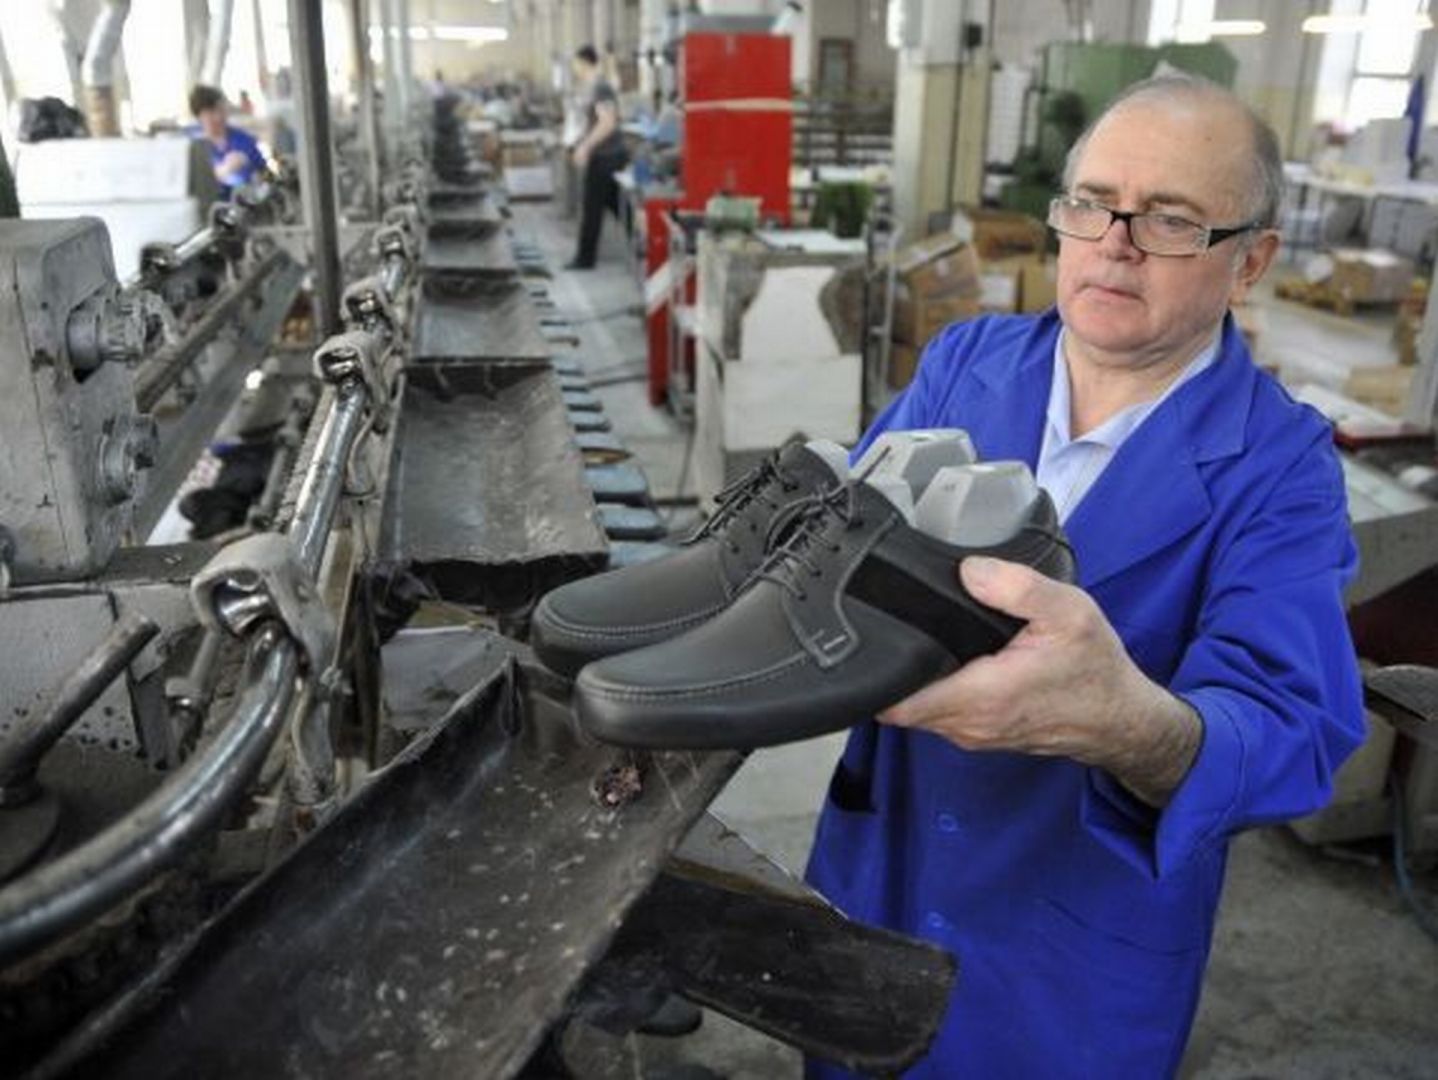 Fizetésképtelenné nyilvánították a Clujana cipőgyárat